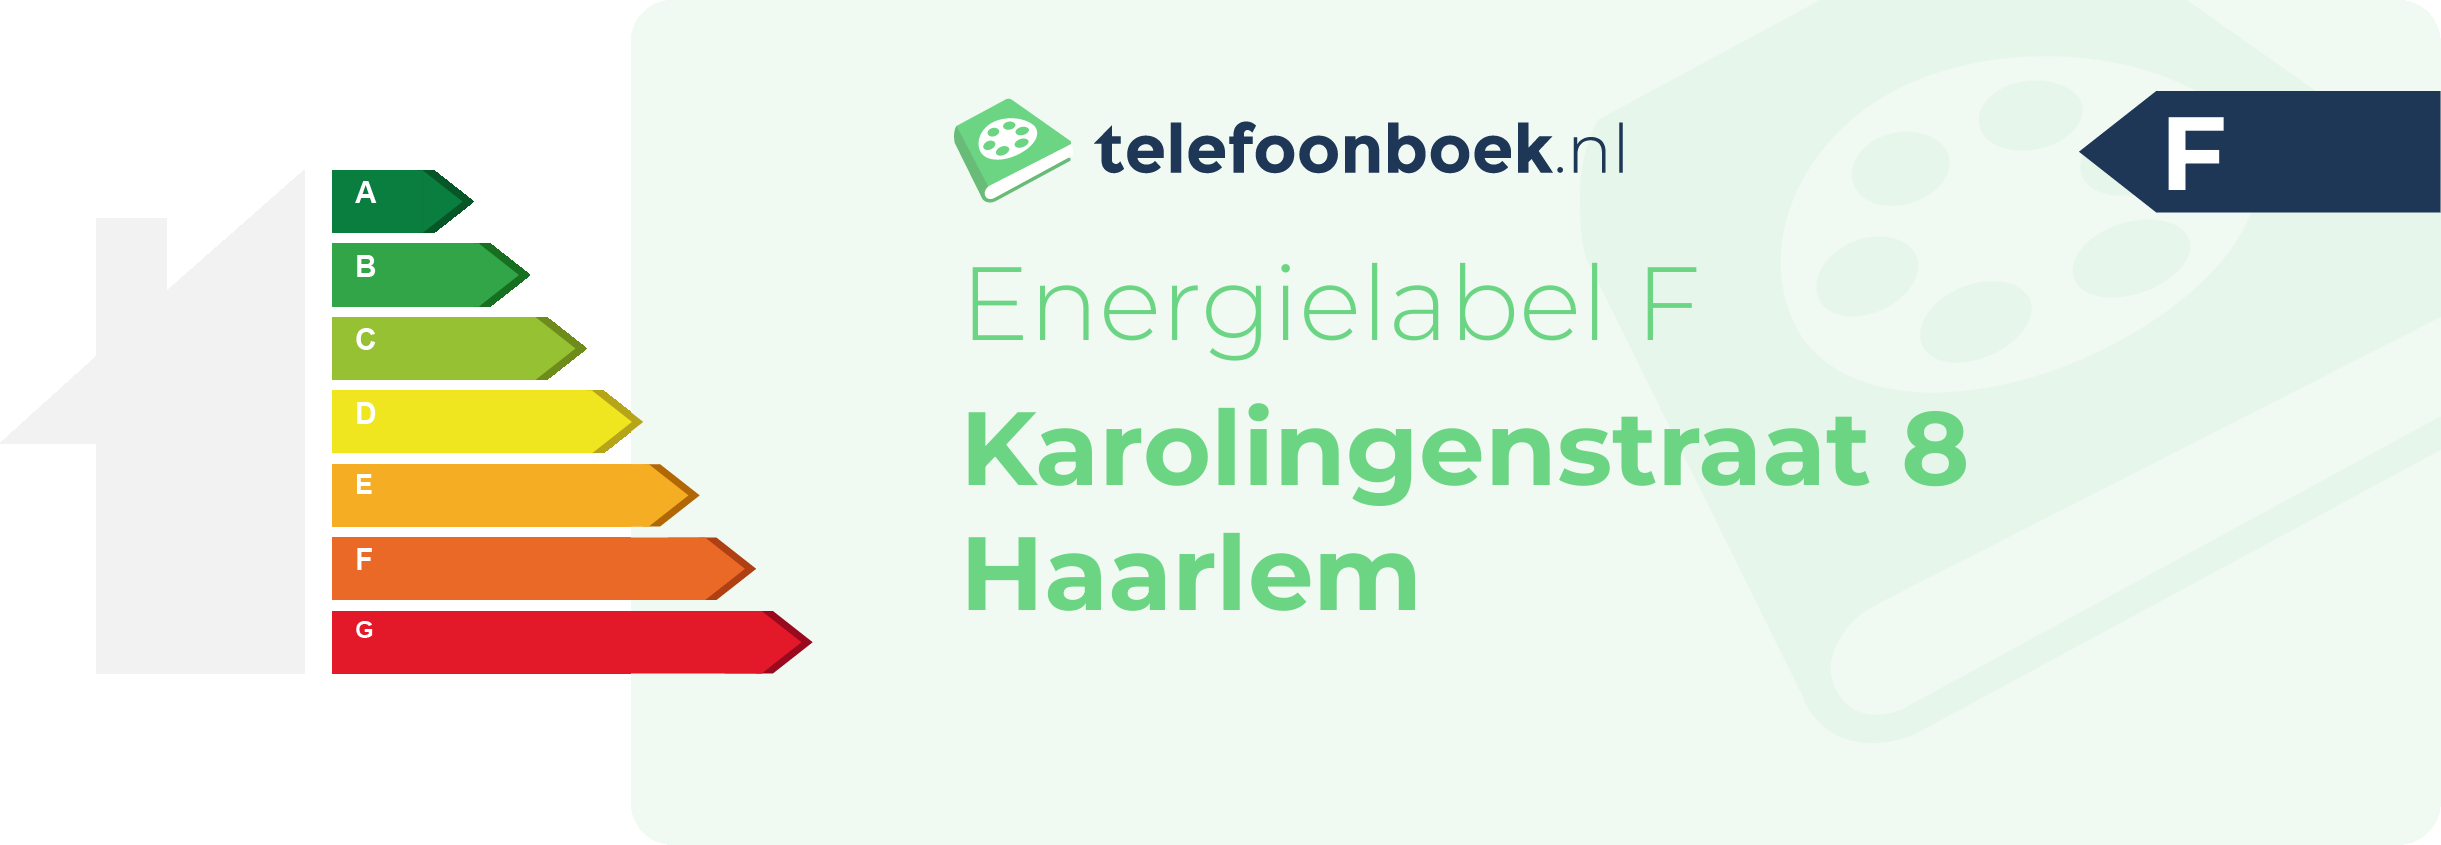 Energielabel Karolingenstraat 8 Haarlem